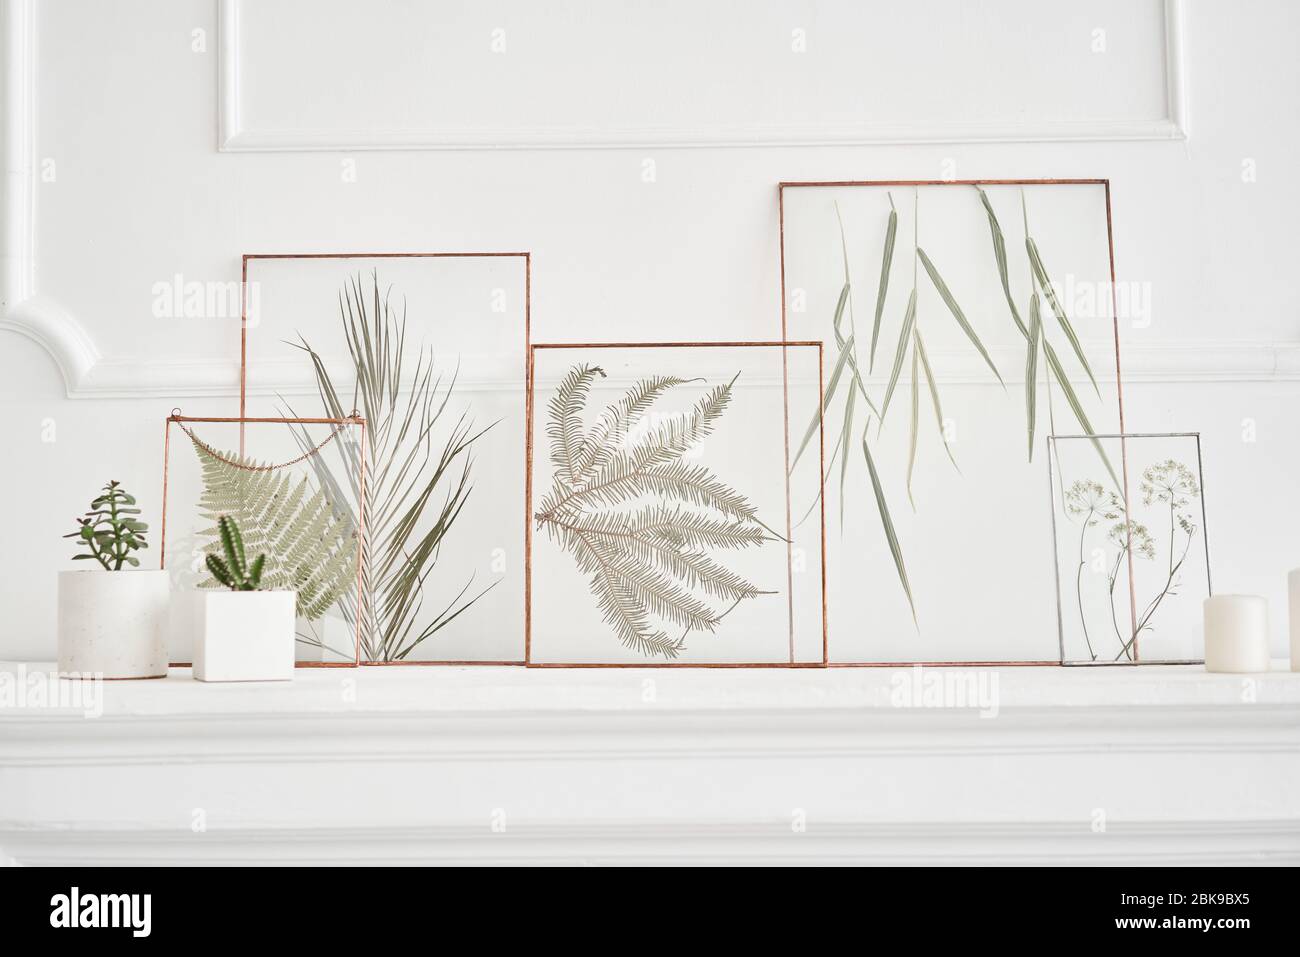 https://c8.alamy.com/compes/2bk9bx5/imagen-de-plantas-reales-entre-los-cristales-elementos-decorativos-naturales-para-la-decoracion-del-hogar-herbario-en-un-marco-sobre-una-mesa-blanca-2bk9bx5.jpg